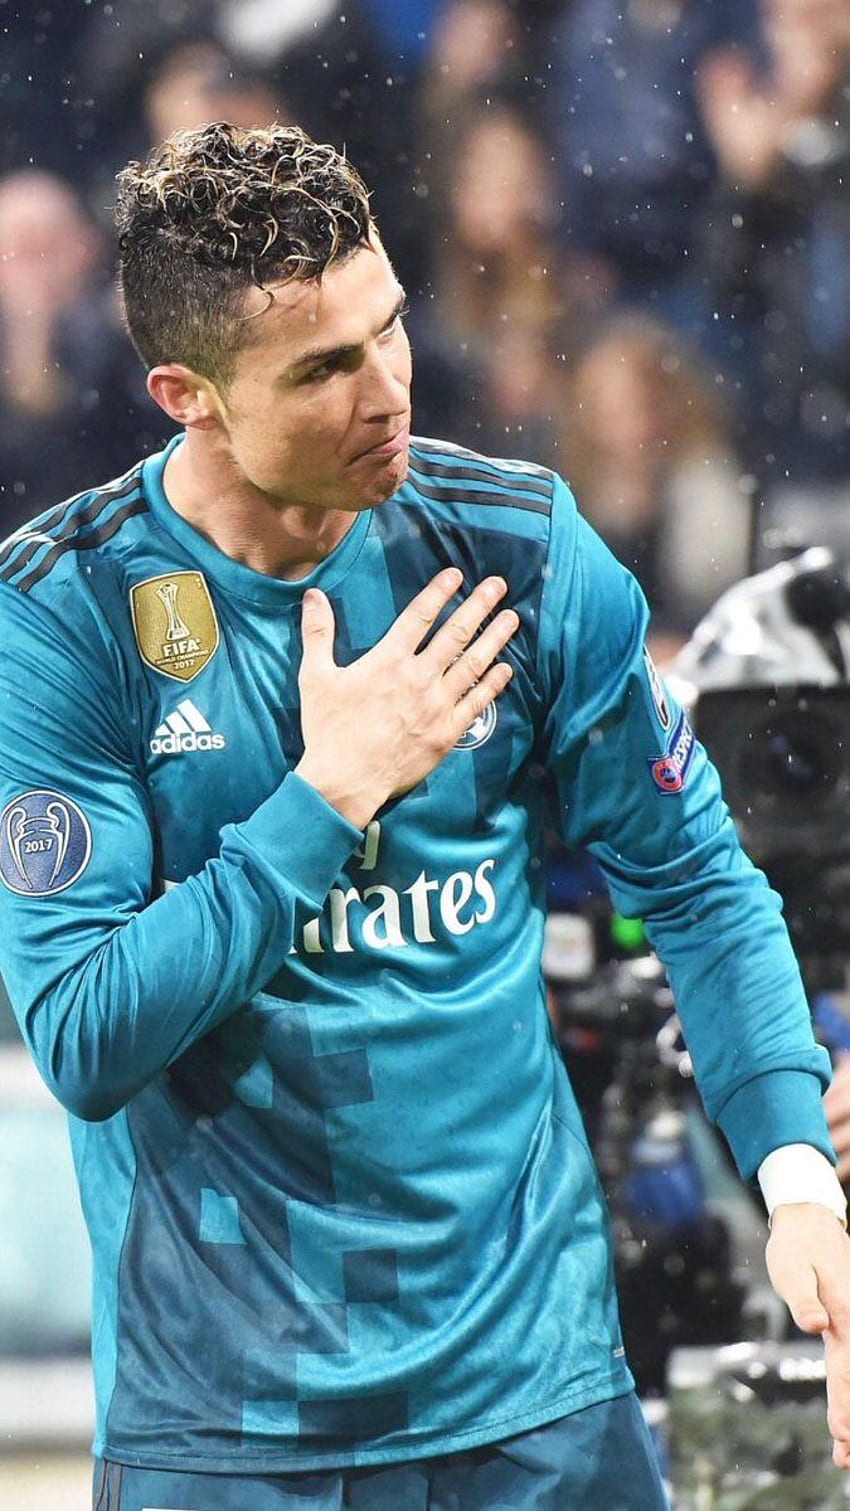 Cristiano Ronaldo For FIFA 2018 4K Ultra HD Mobile Wallpaper